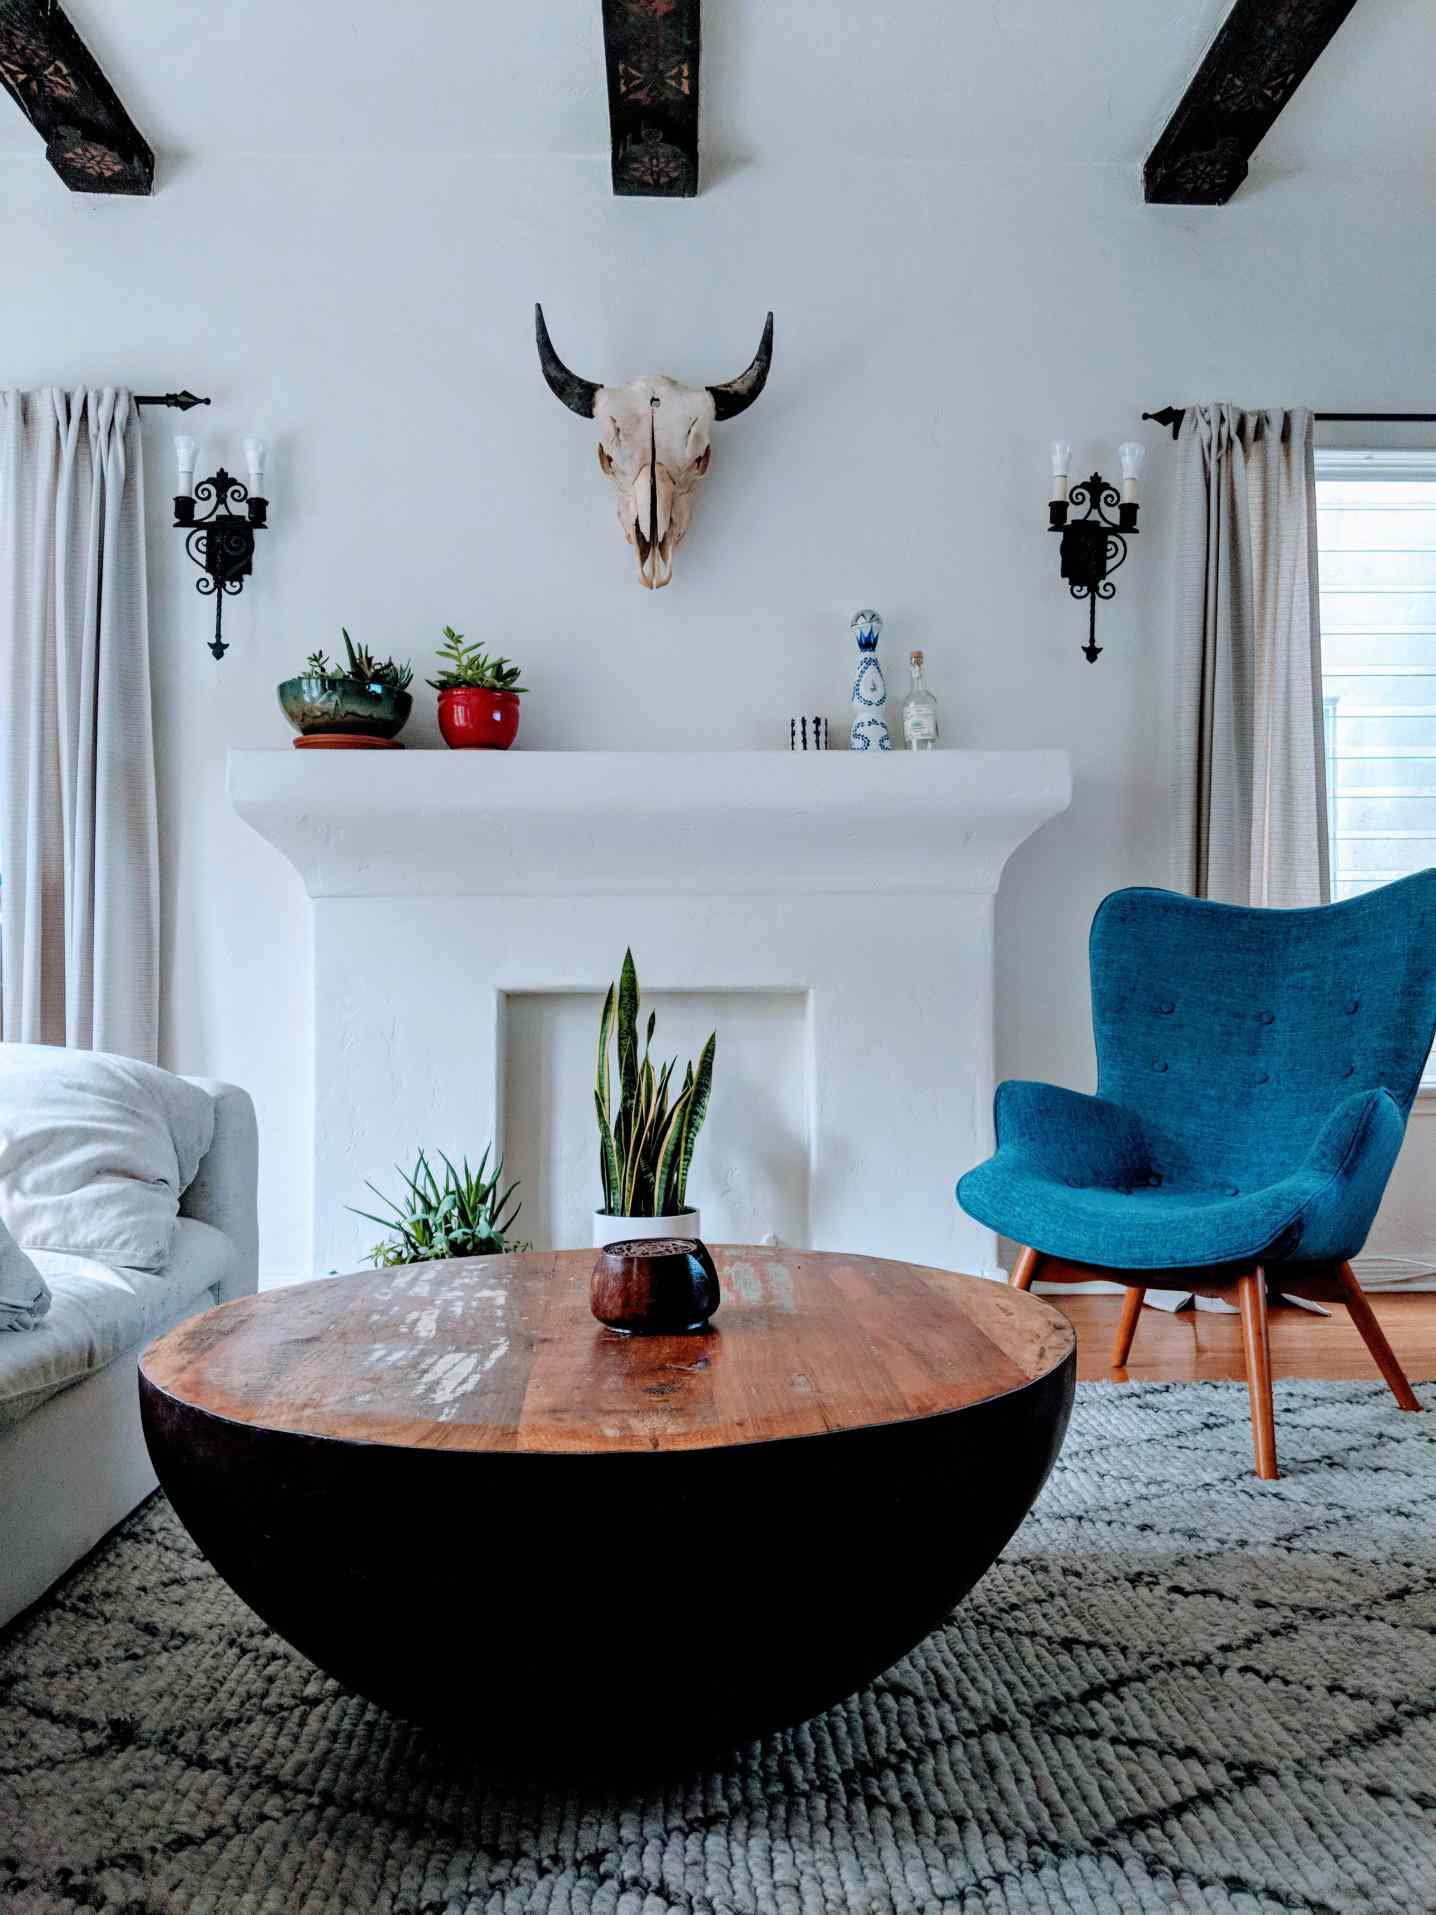 Sala de estar boho chic com mesa circular, cadeira azul, lareira falsa e cabeça de touro na parede.